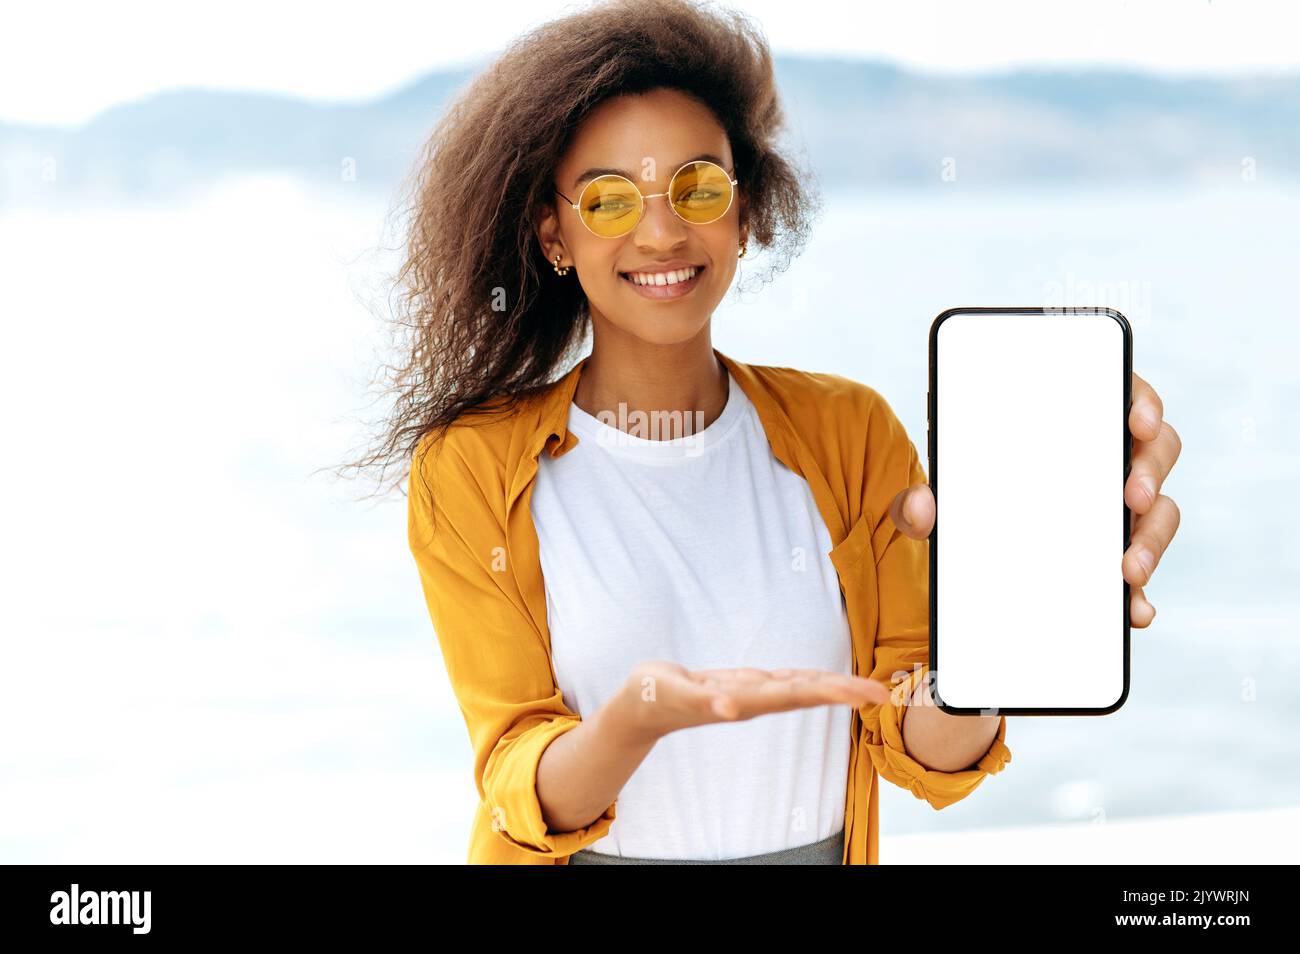 Leerer Raum für Präsentation oder Werbung. Moderne afroamerikanische lockige junge Frau, mit oranger Brille, steht im Freien, zeigt Smartphone mit weißem Mockup-Bildschirm, zeigt Hand, lächelnd Stockfoto